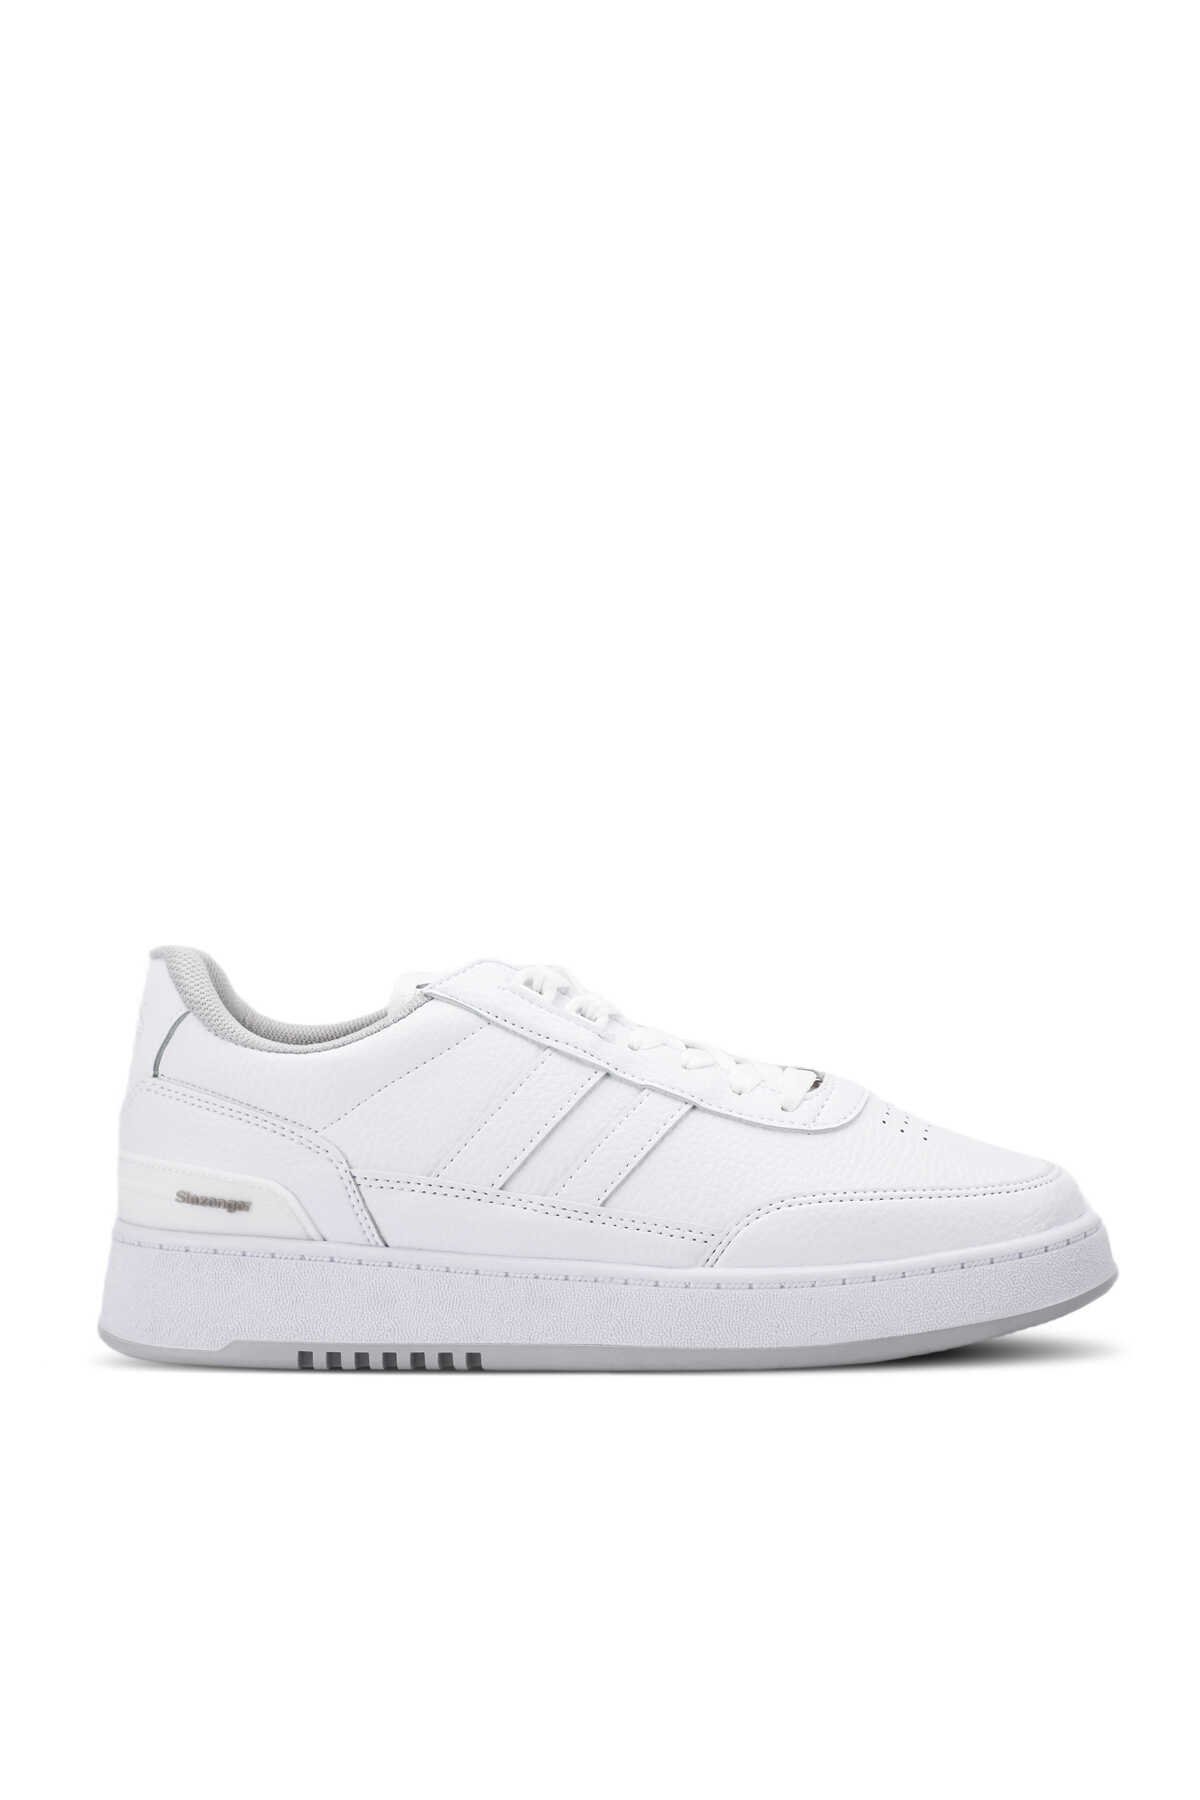 Slazenger - Slazenger DAPHNE Sneaker Kadın Ayakkabı Beyaz